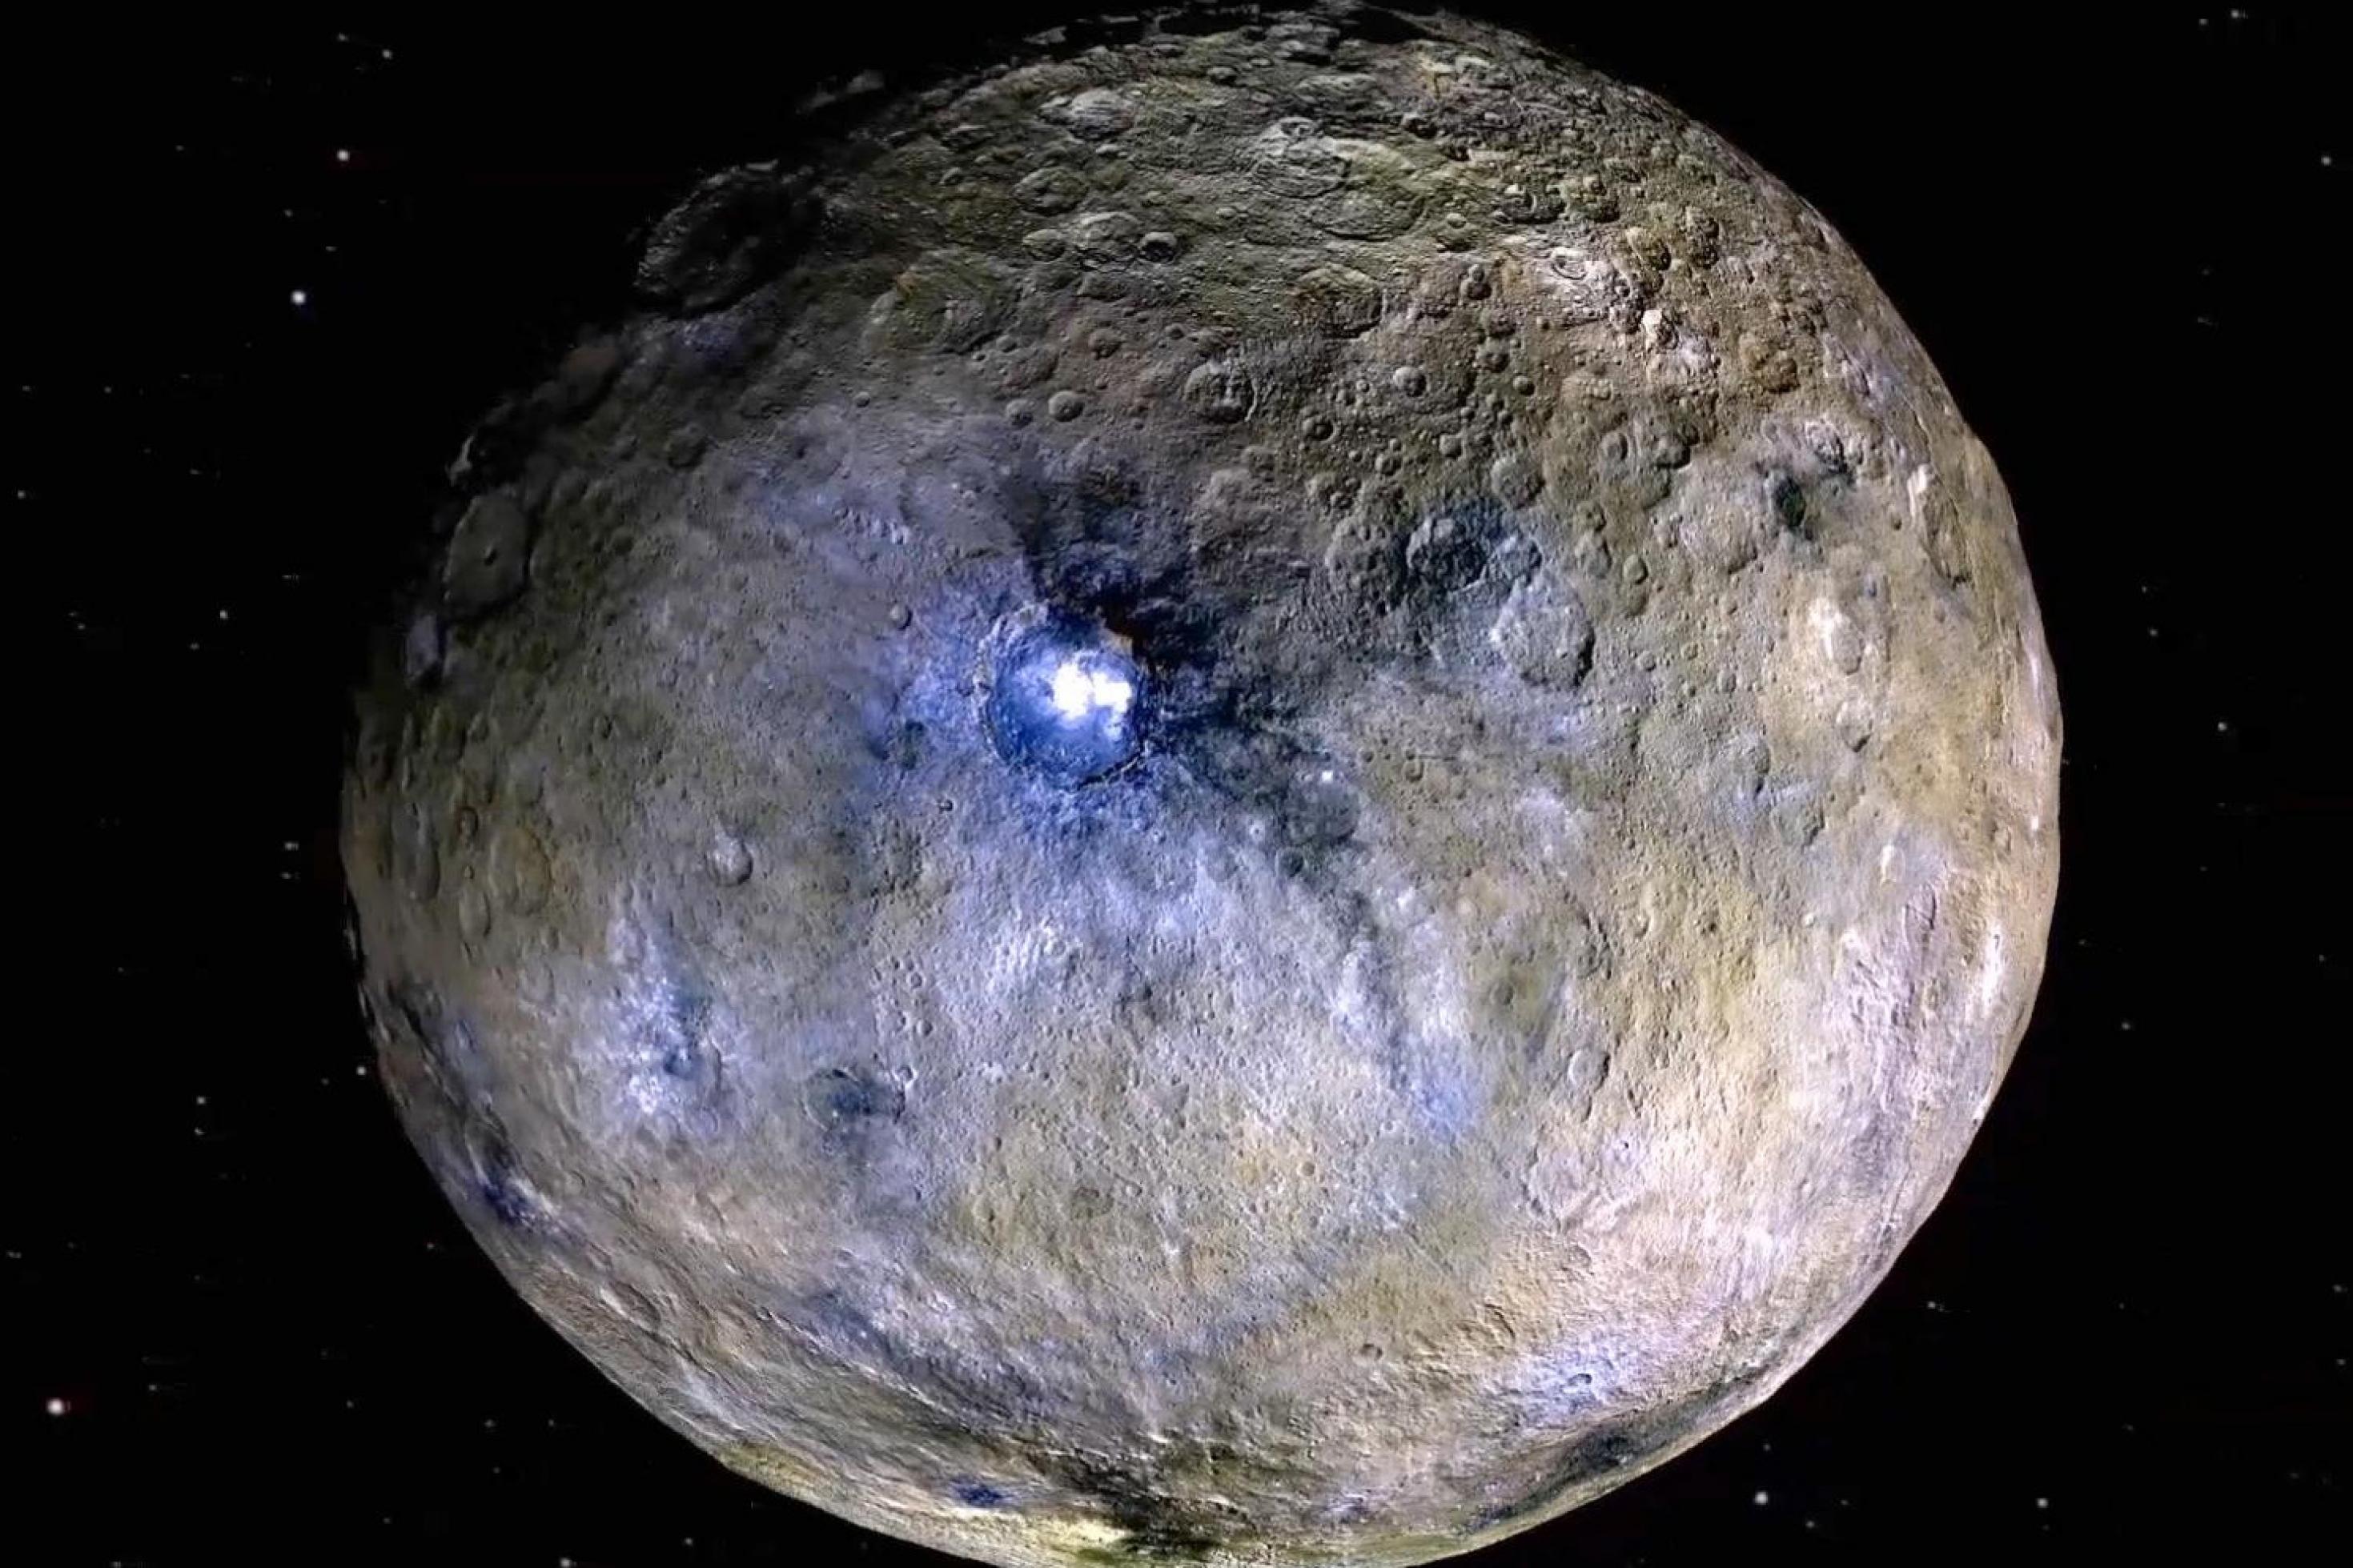 Der fast runde Planet in Gänze: braune und graue Farben und viele Krater, in der Mitte ein großer Krater mit gleißend hellen Flecken, der schwarz umrandet ist.